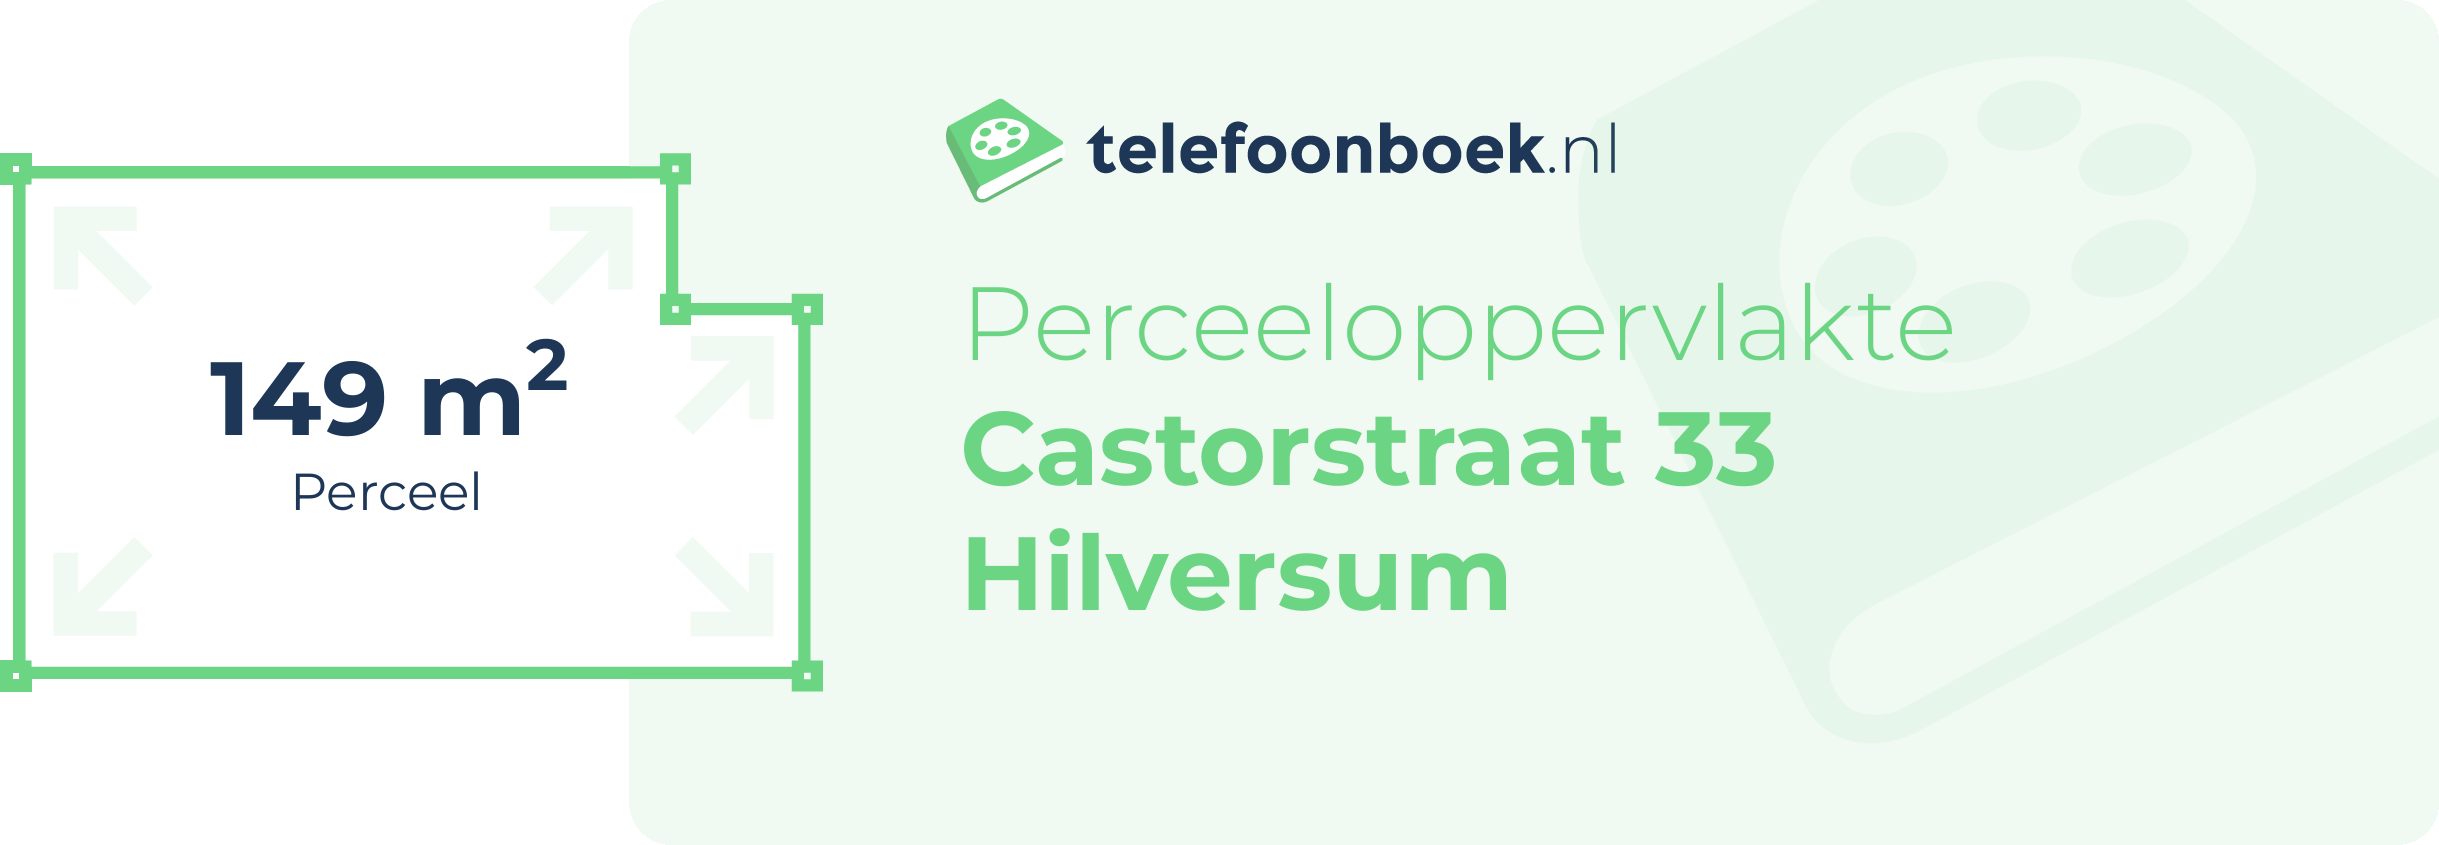 Perceeloppervlakte Castorstraat 33 Hilversum